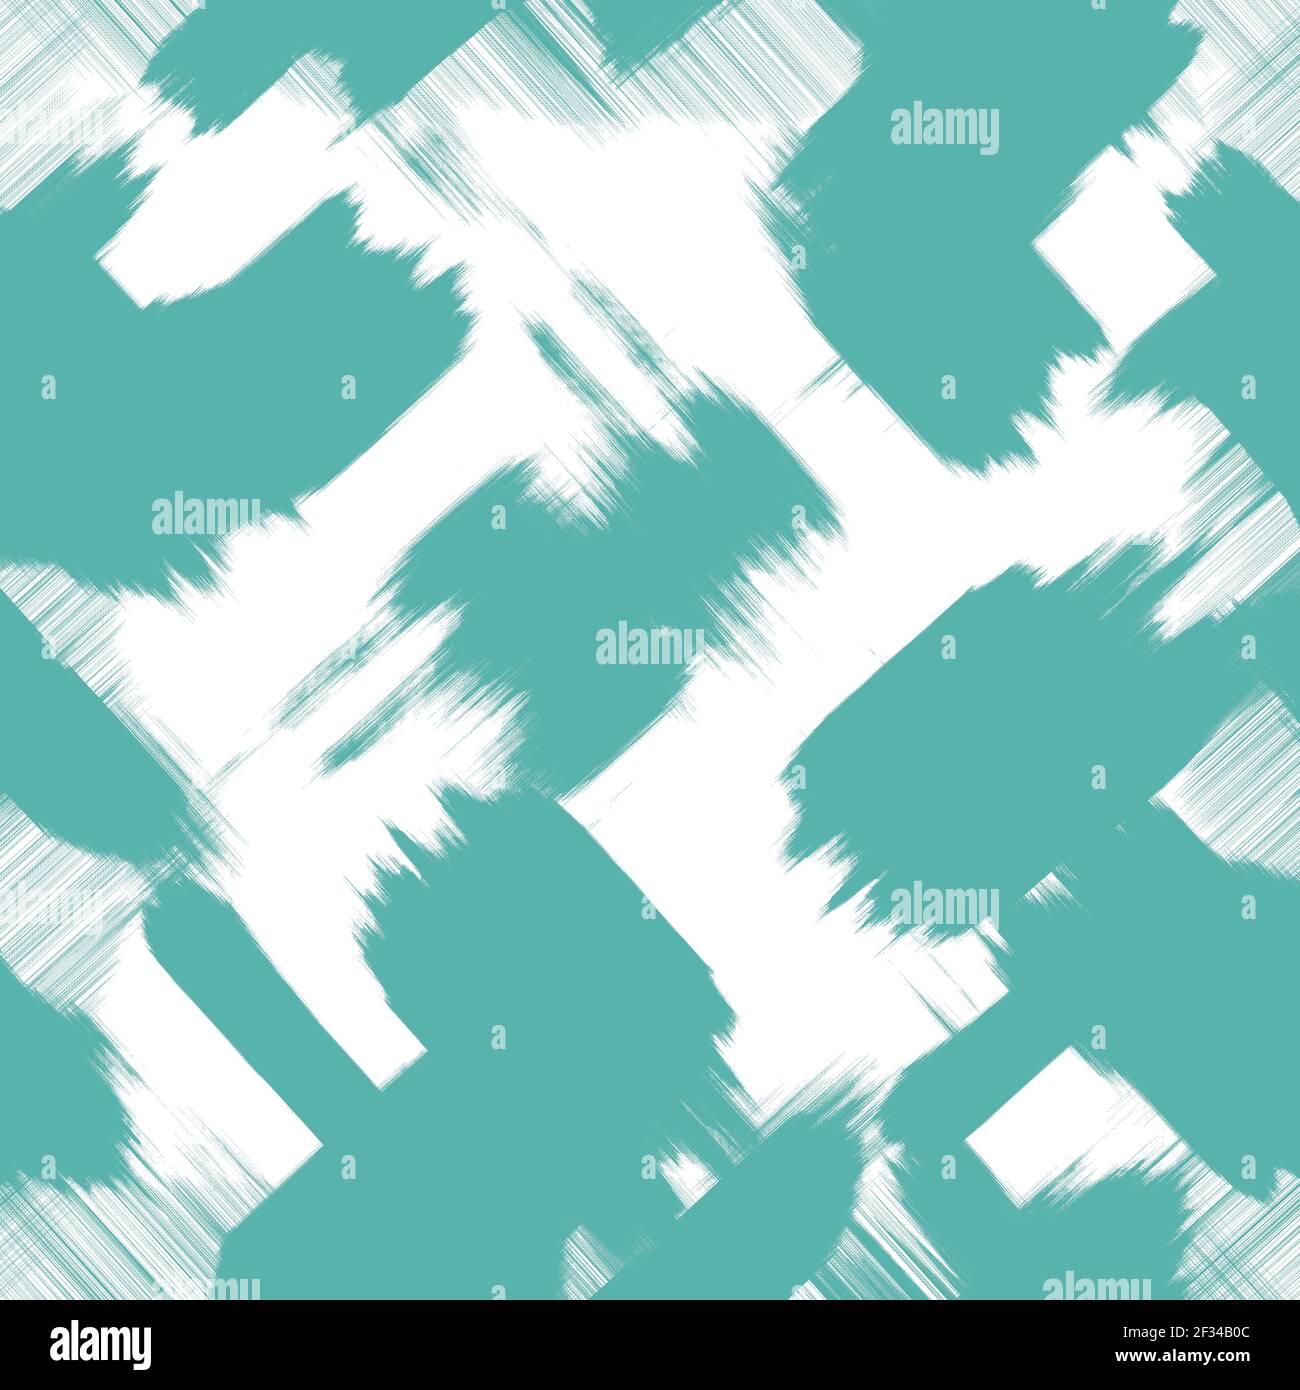 Blaugrün Pinselstriche, weißer Hintergrund. Farbige Grunge Tapete. Abstraktes Muster chaotischer Formen, Nachahmung der digitalen Malerei. Stilvolles, modernes Design Stockfoto